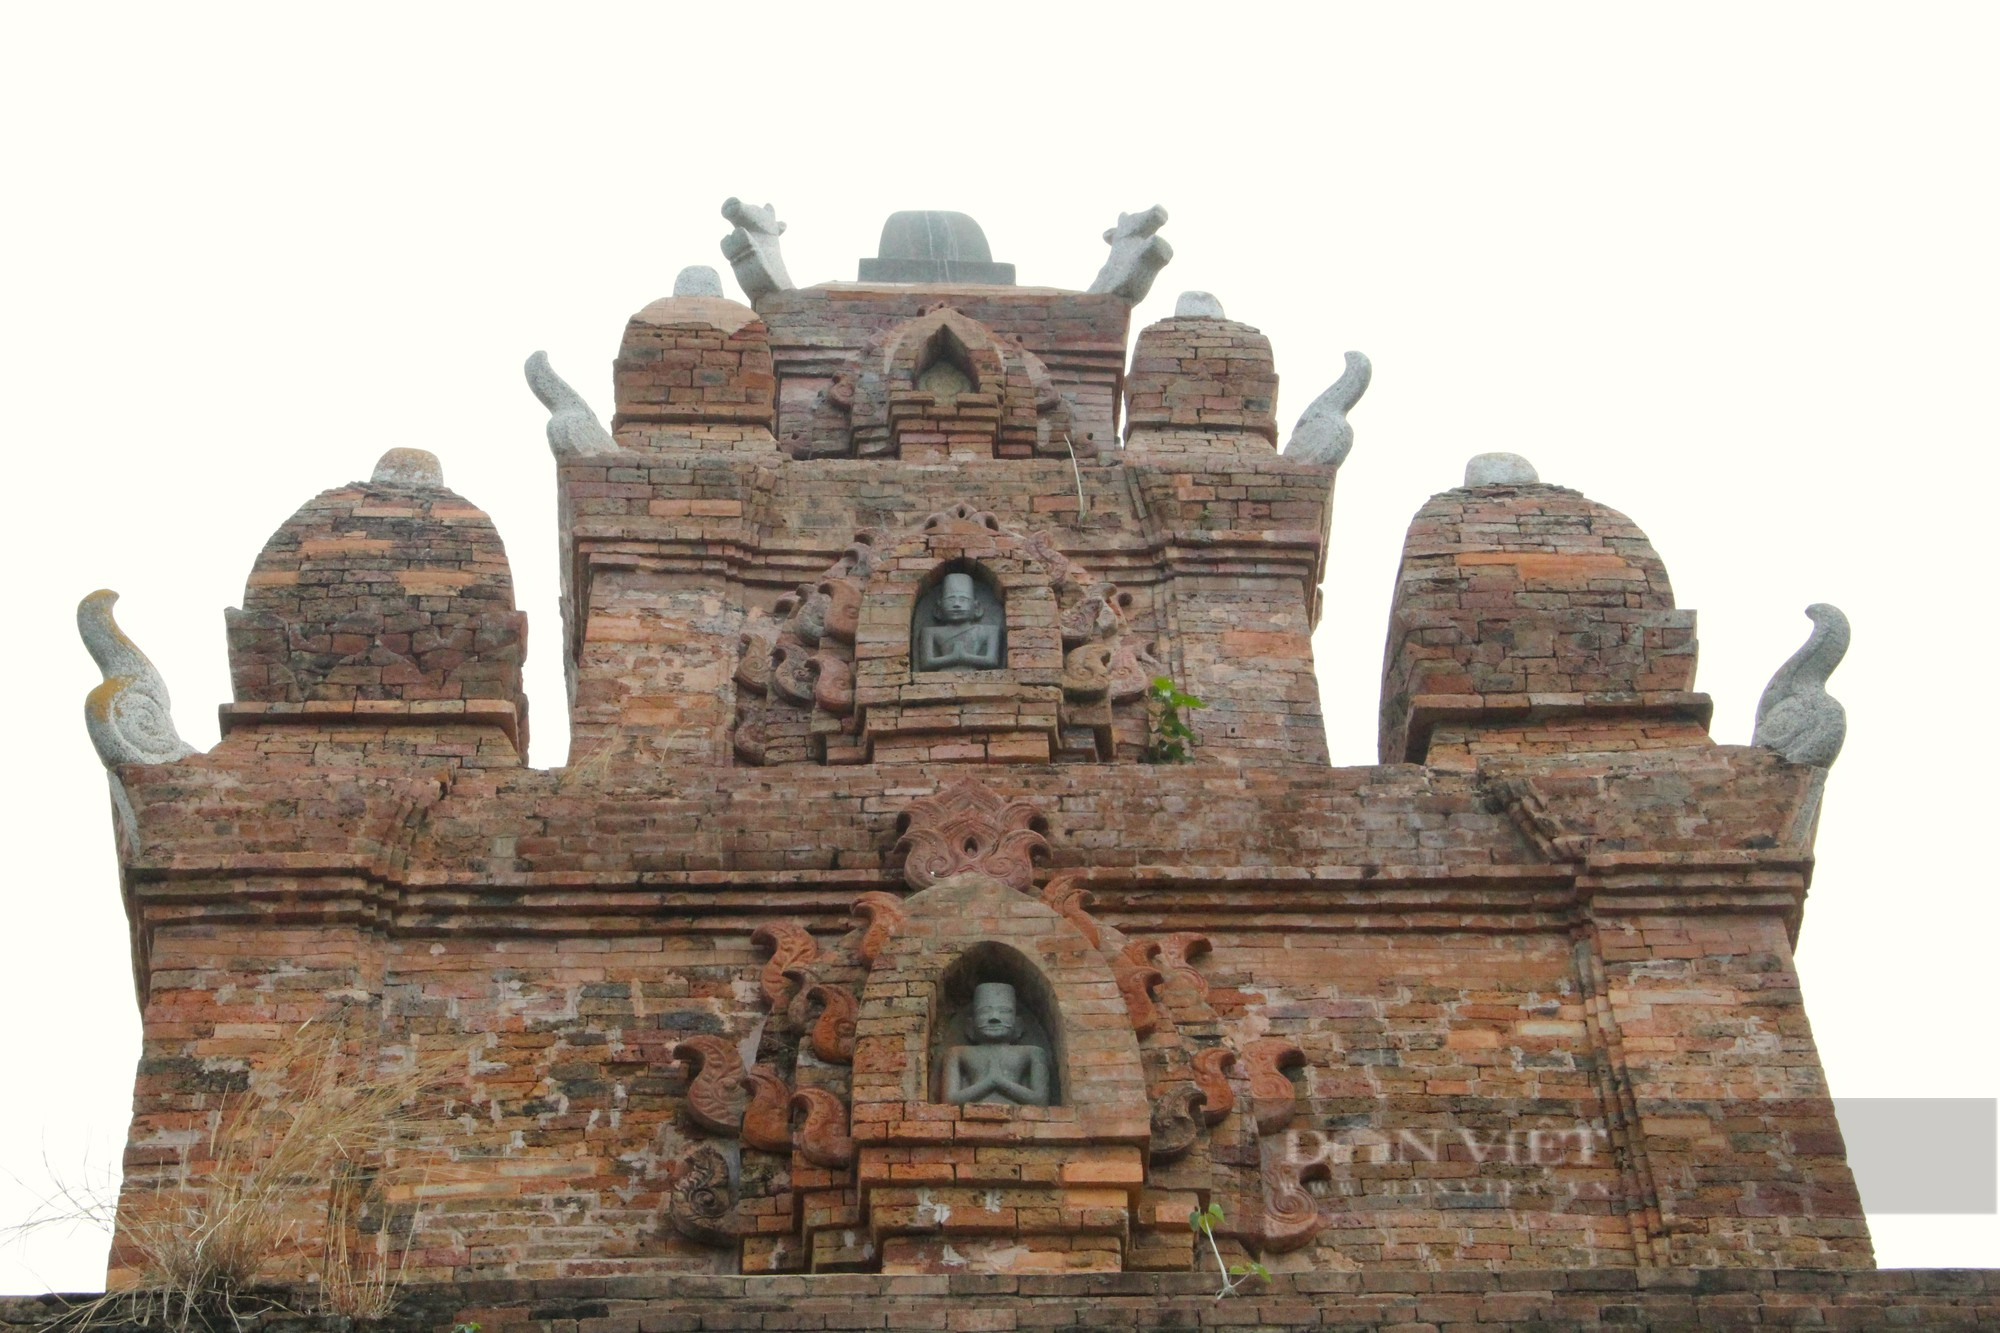 Bí ẩn bảo vật quốc gia bên trong tháp Chăm thờ vị vua cuối cùng của vương quốc Chămpa ở Ninh Thuận - Ảnh 9.